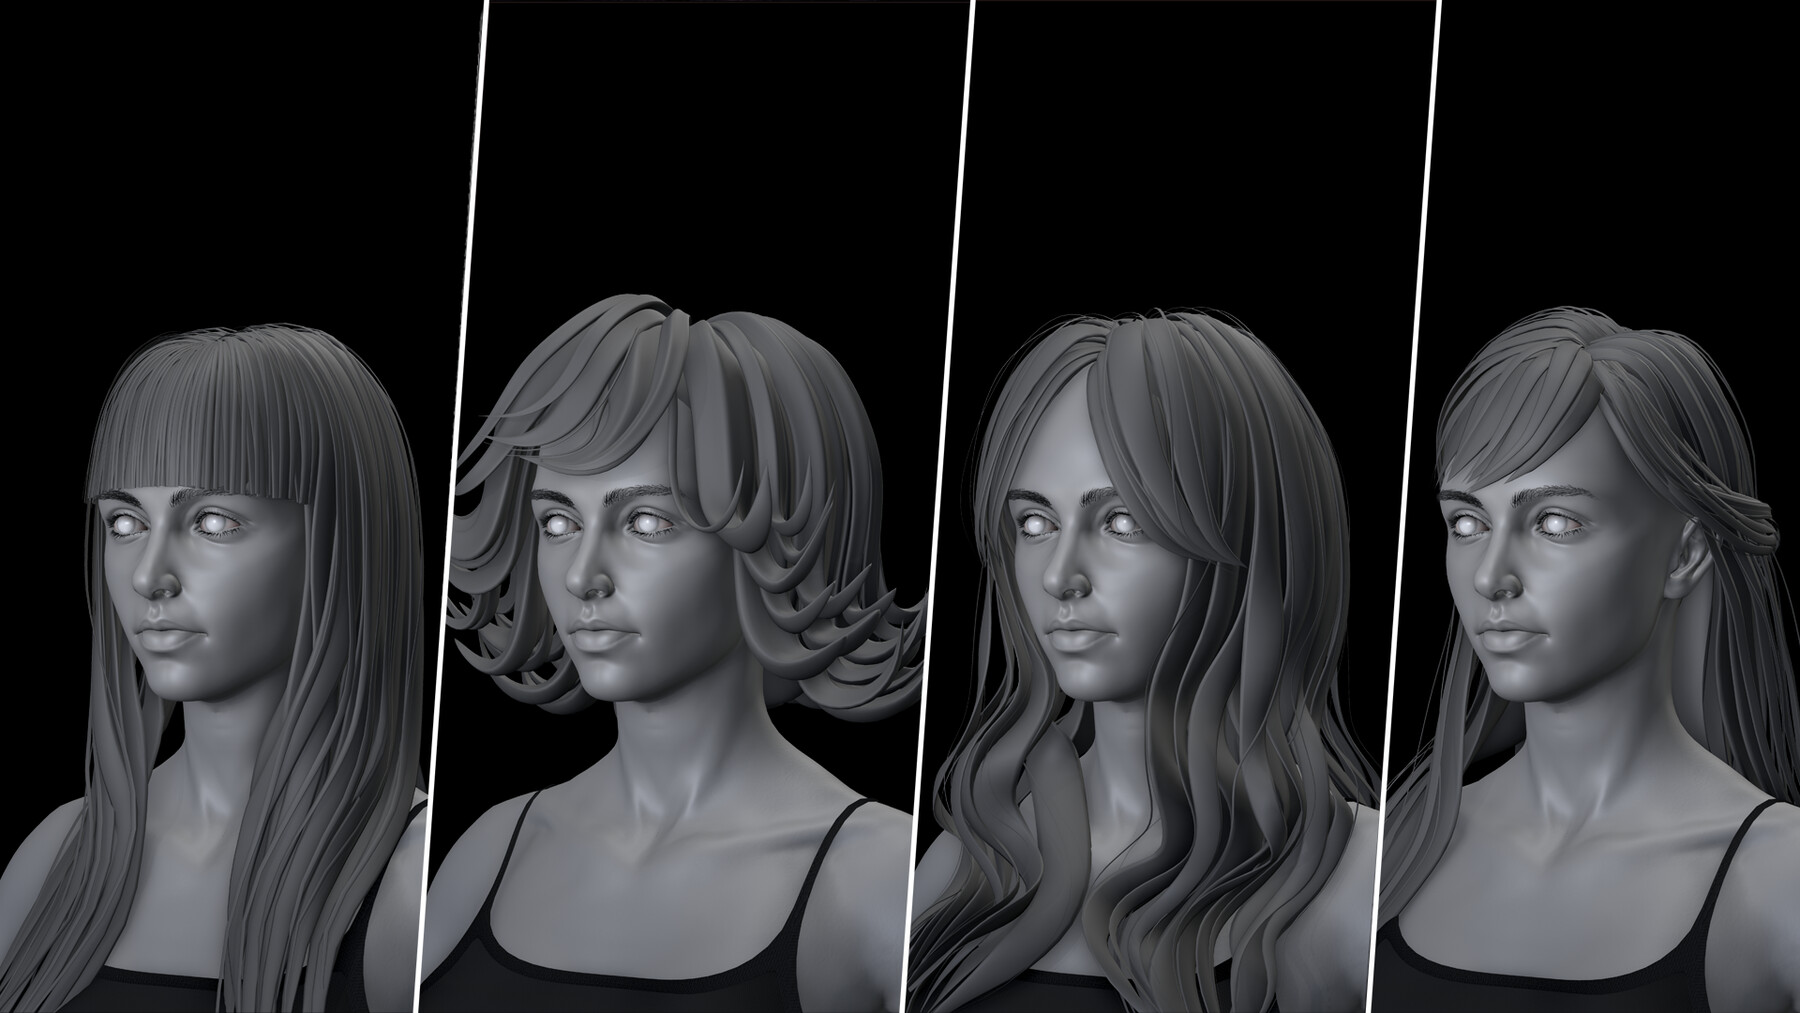 ArtStation - Female hair